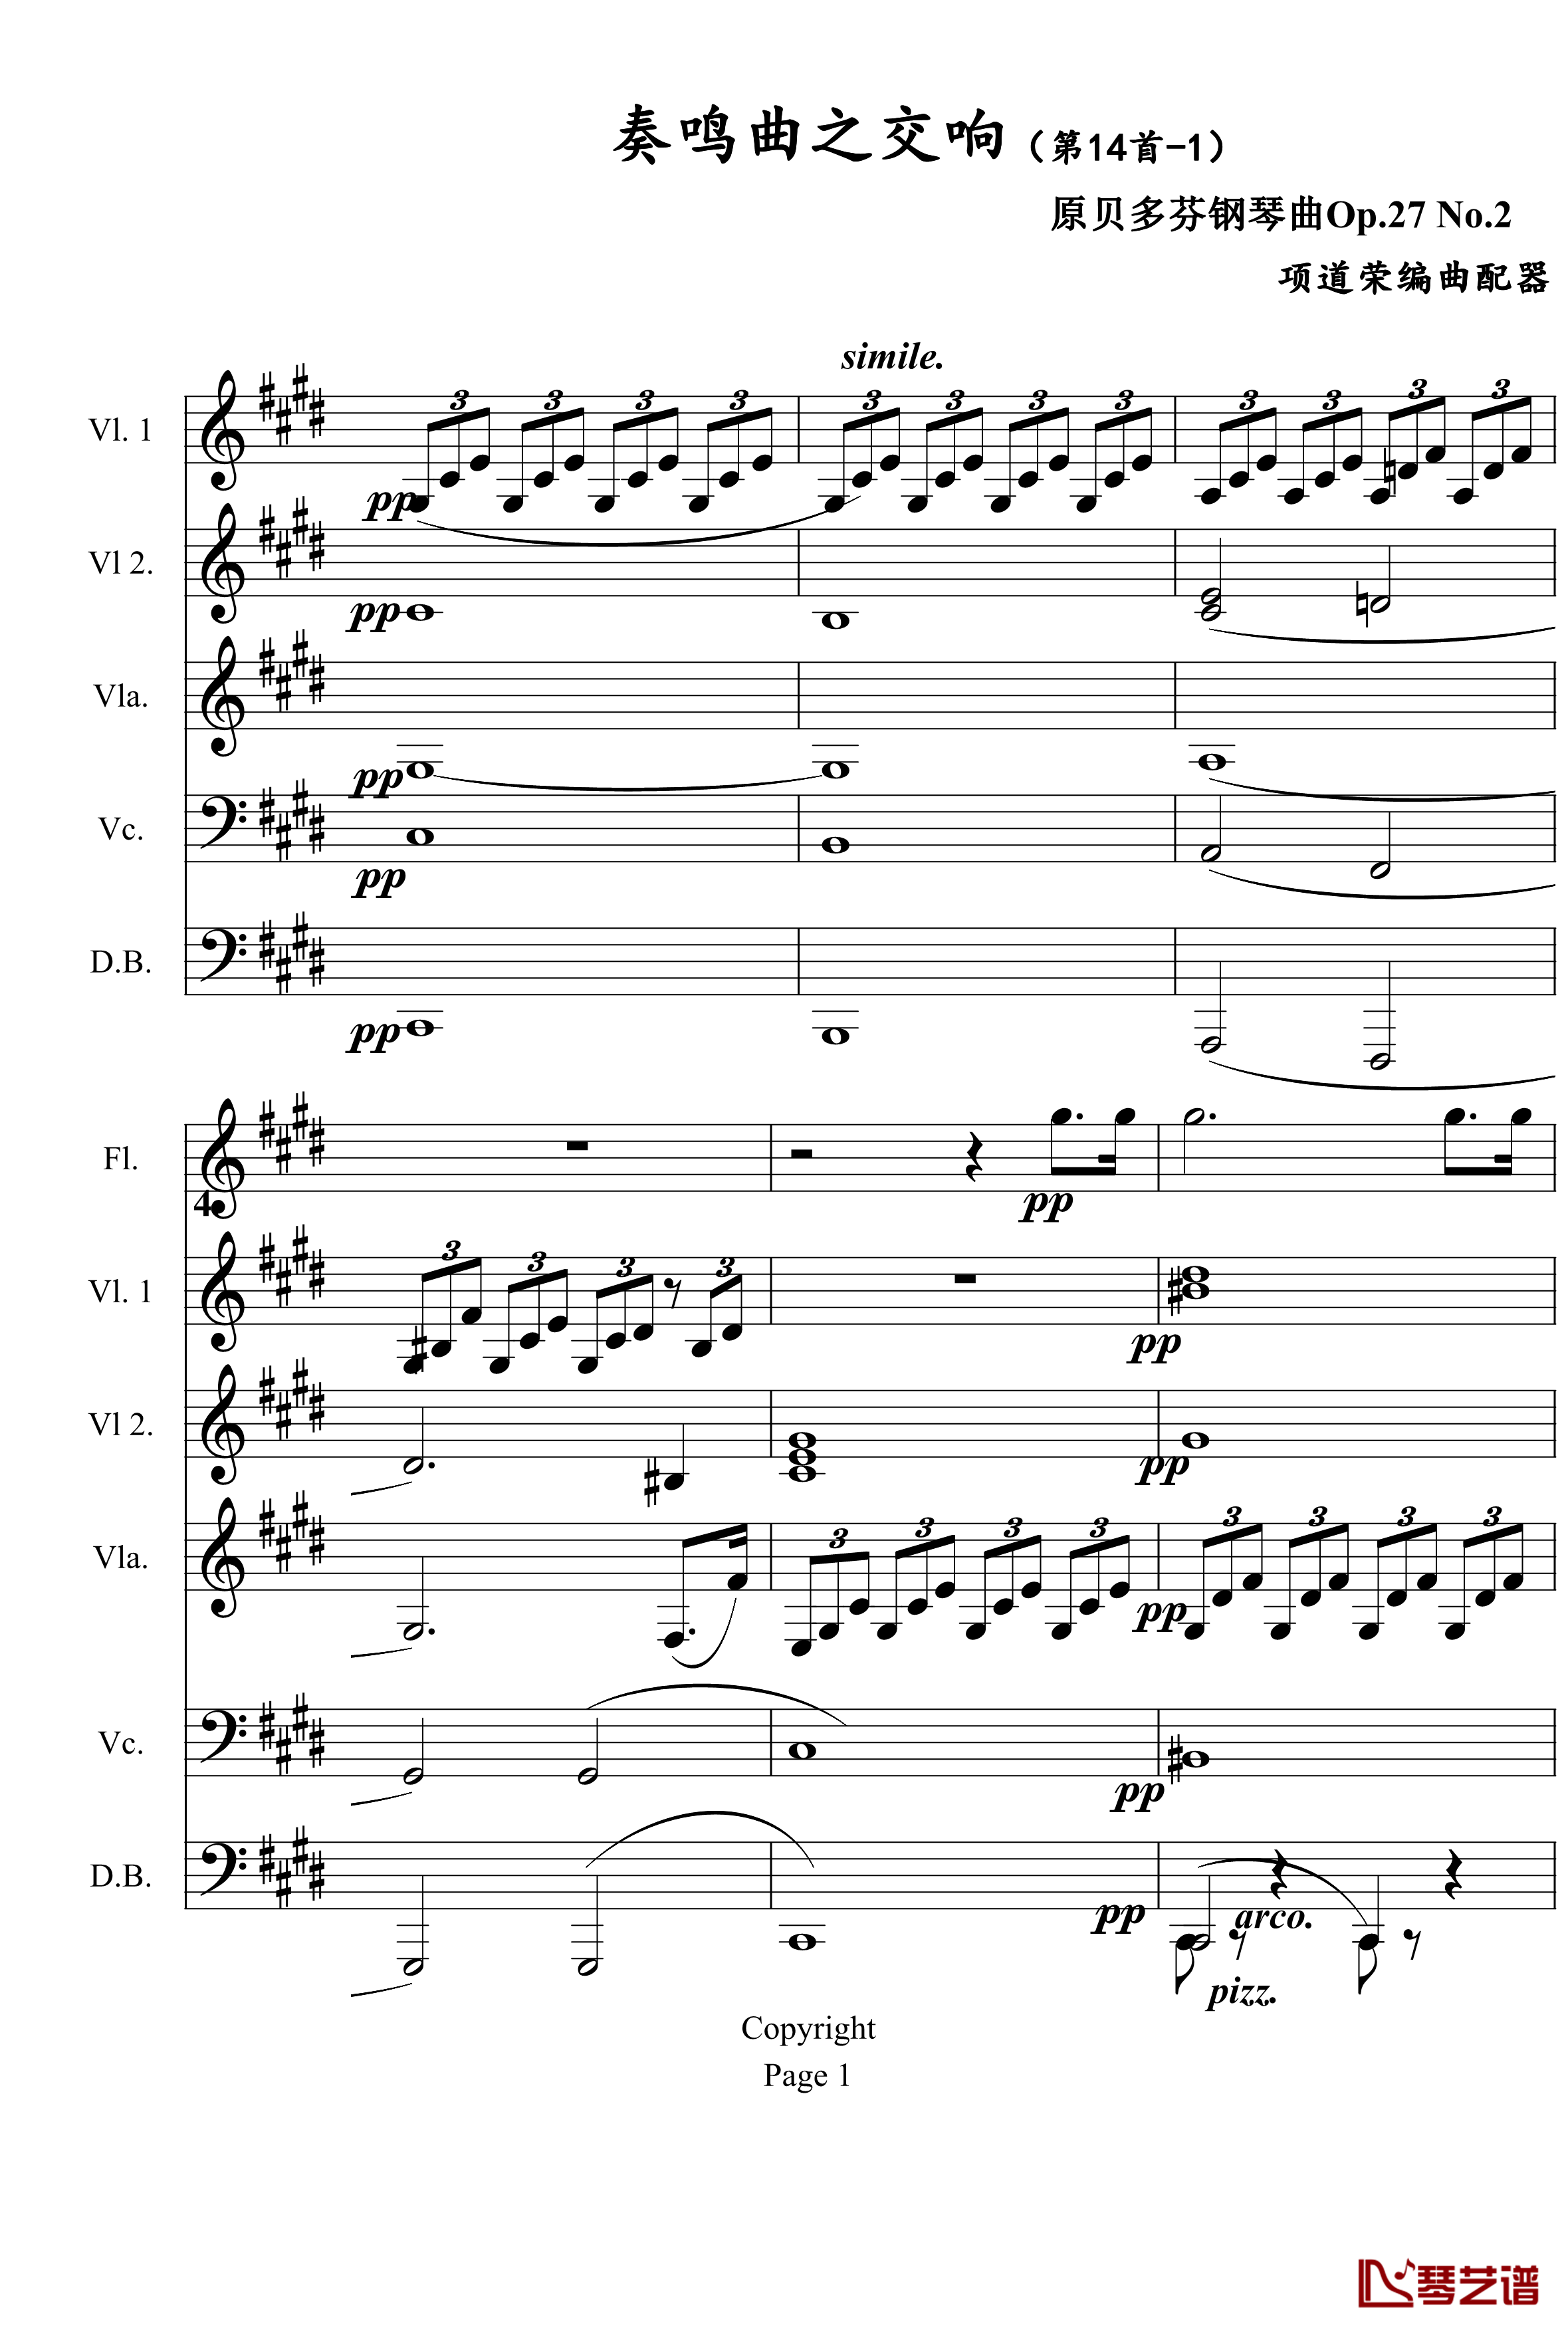 奏鸣曲之交响钢琴谱-第14首-Ⅰ-贝多芬-beethoven1